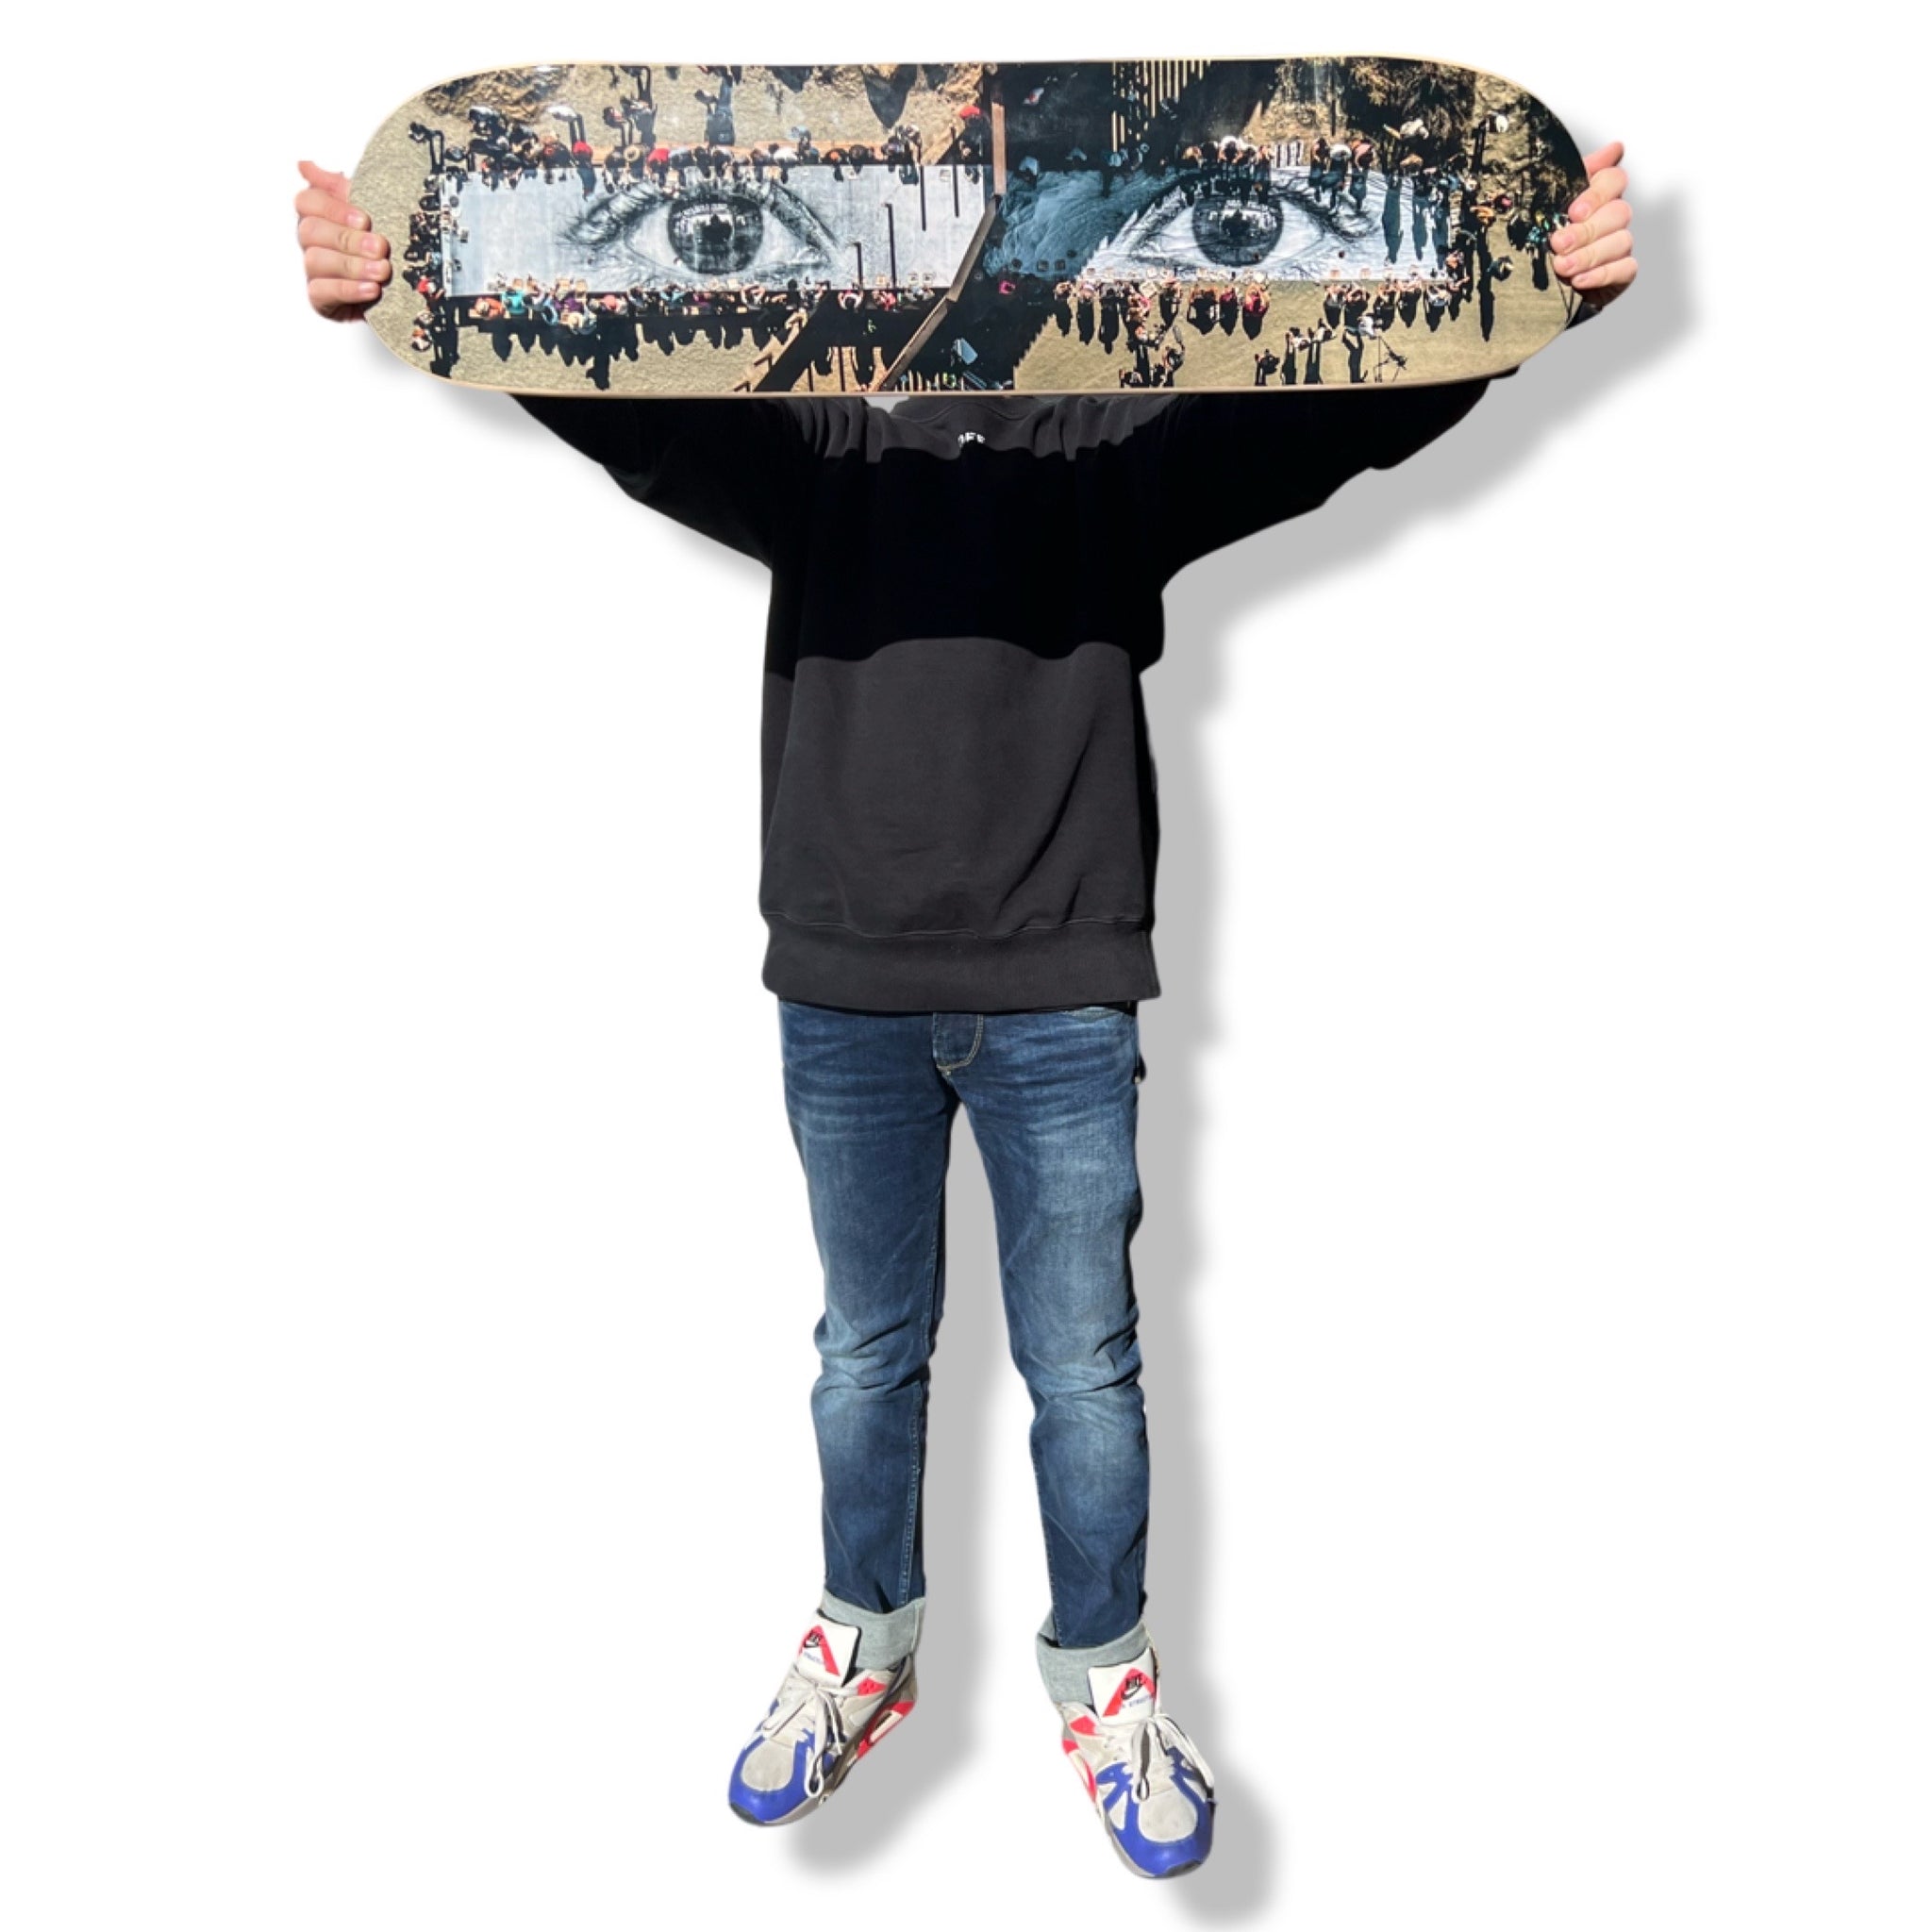 Skate Piggyback - Roger Ballen x The Skateroom – Memento Mori